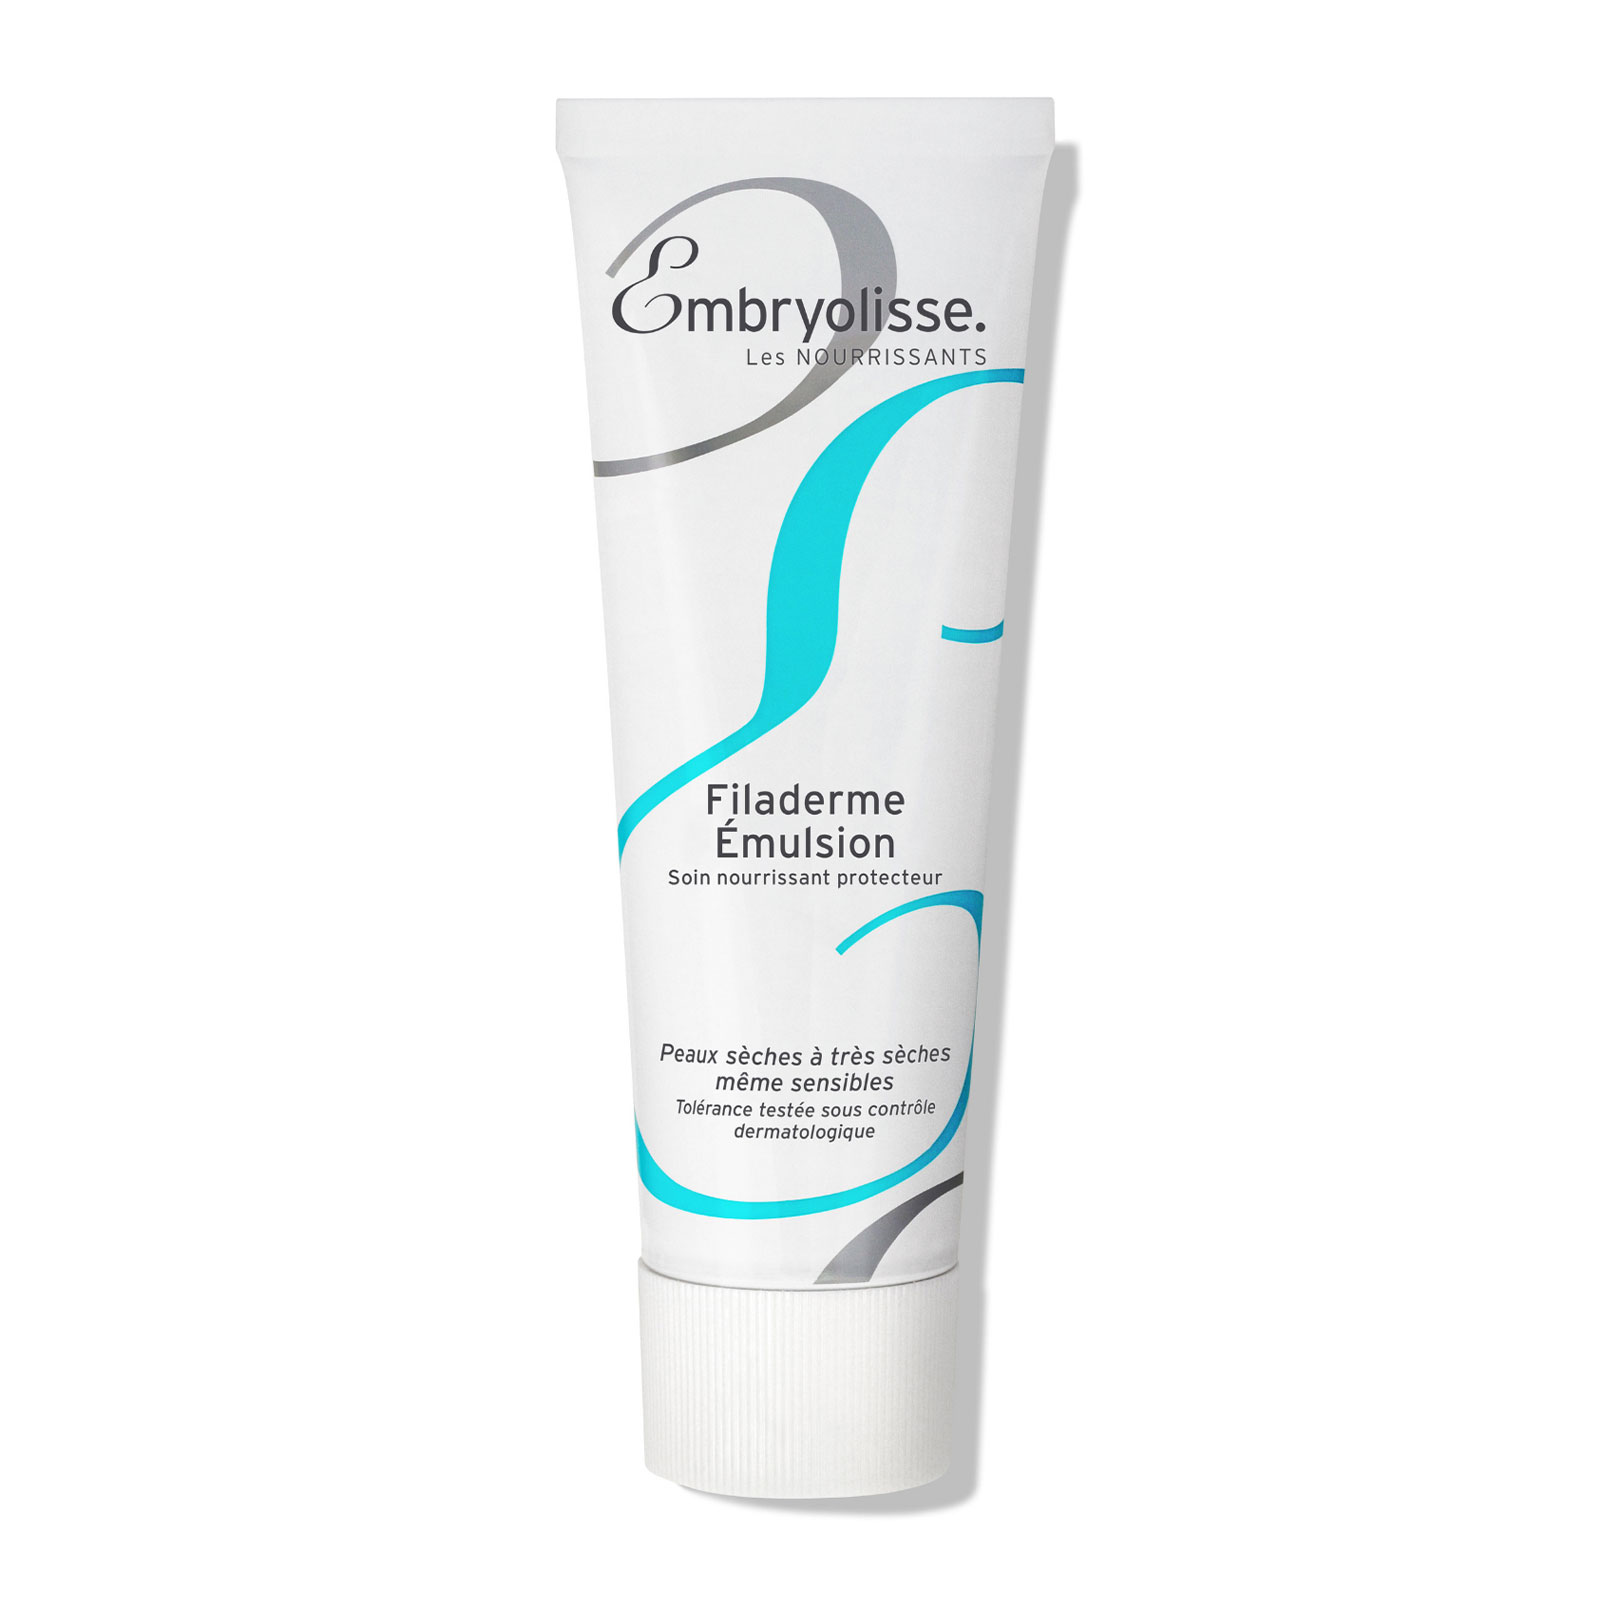 Embryolisse Filaderme Emulsion Cream 75ml